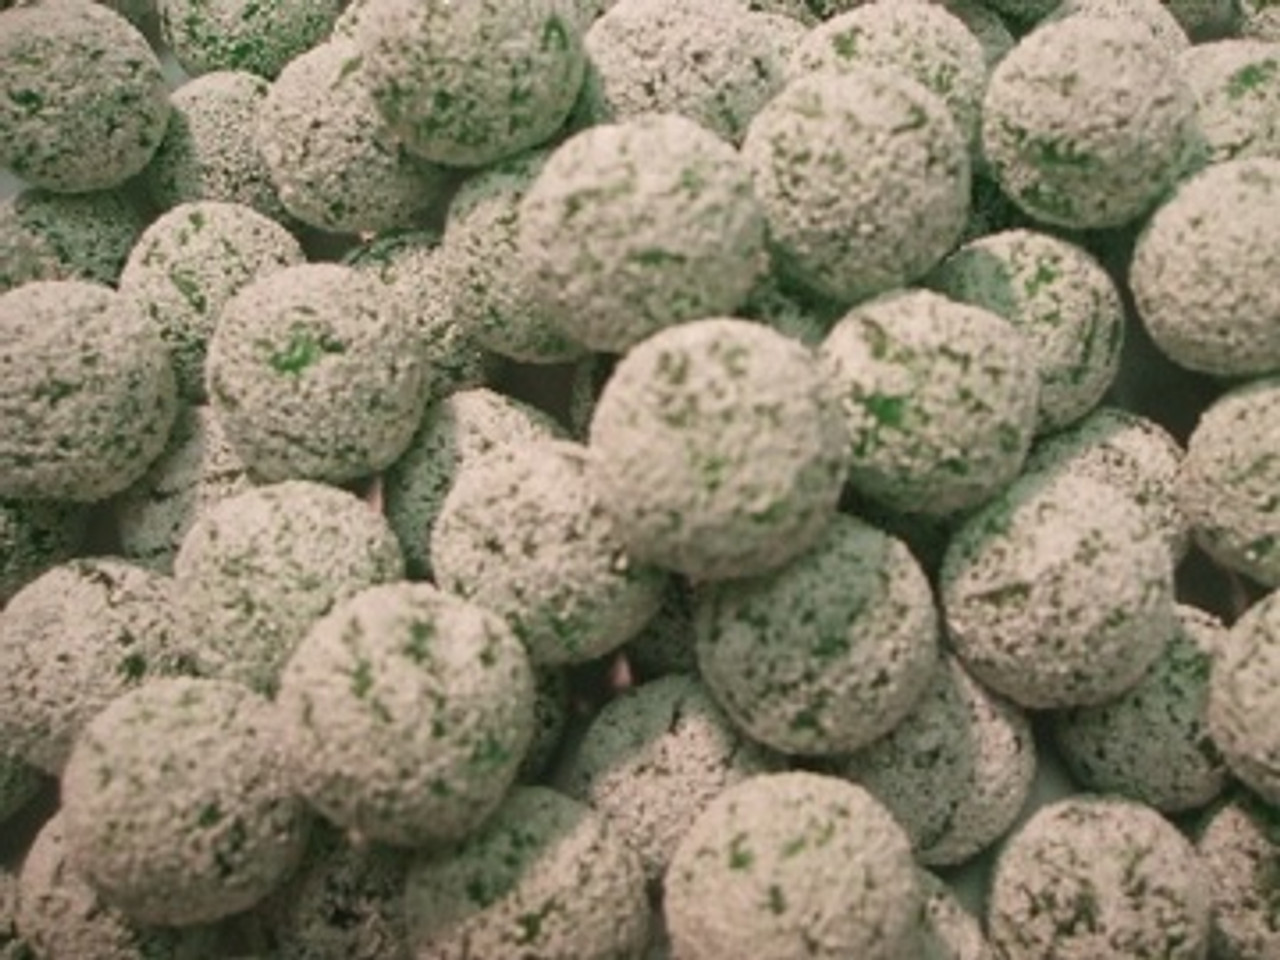 Barnetts MEGA Sour Fruit Balls - Sour Lollies Online - Candy Co